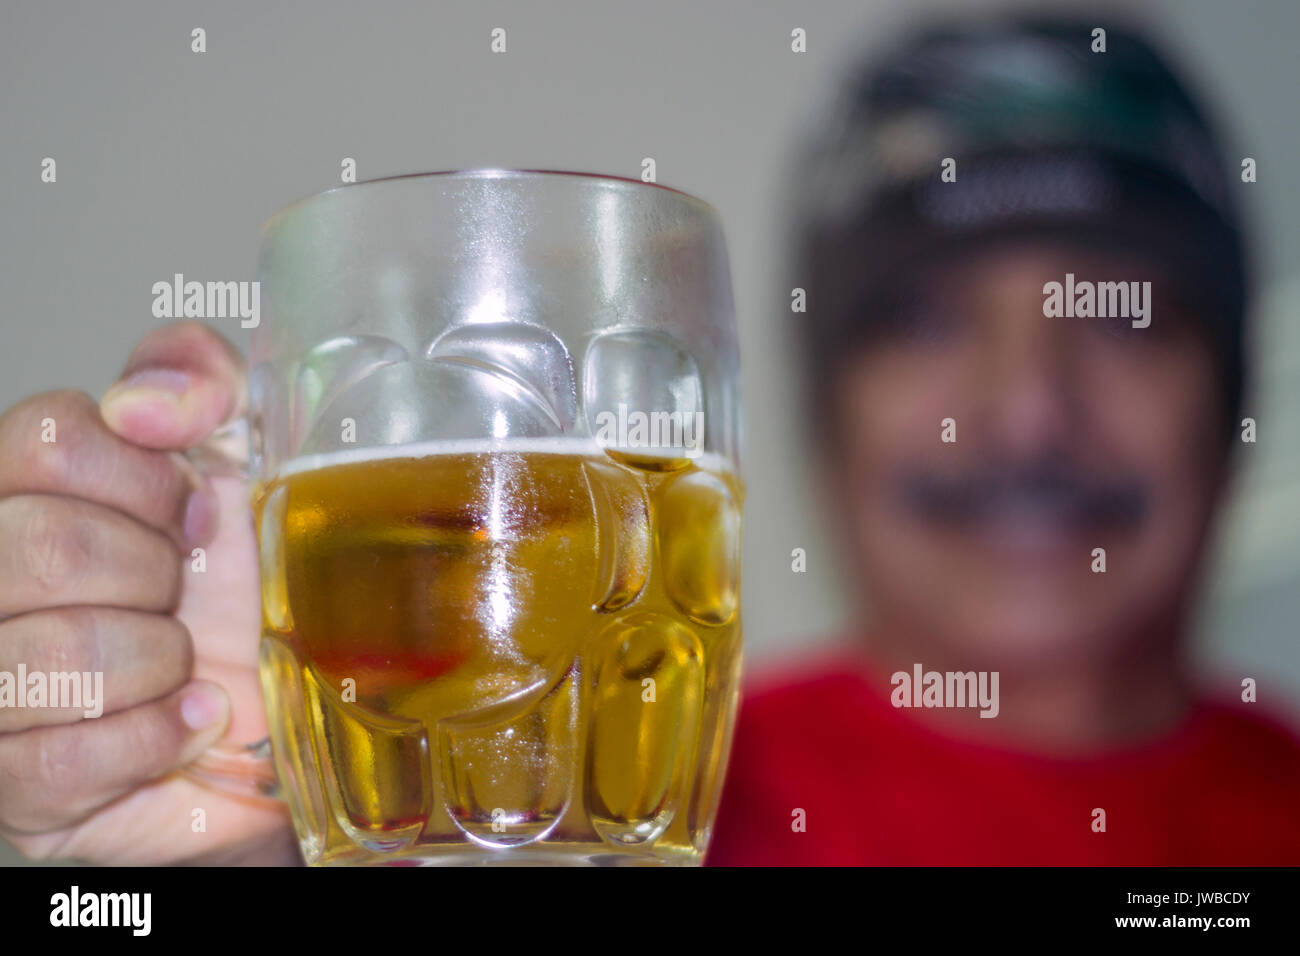 Vaso de cerveza en primer plano, un hombre desenfocado atras, empuñando el vaso, saludando y sonriendo, toma horizontal Stock Photo